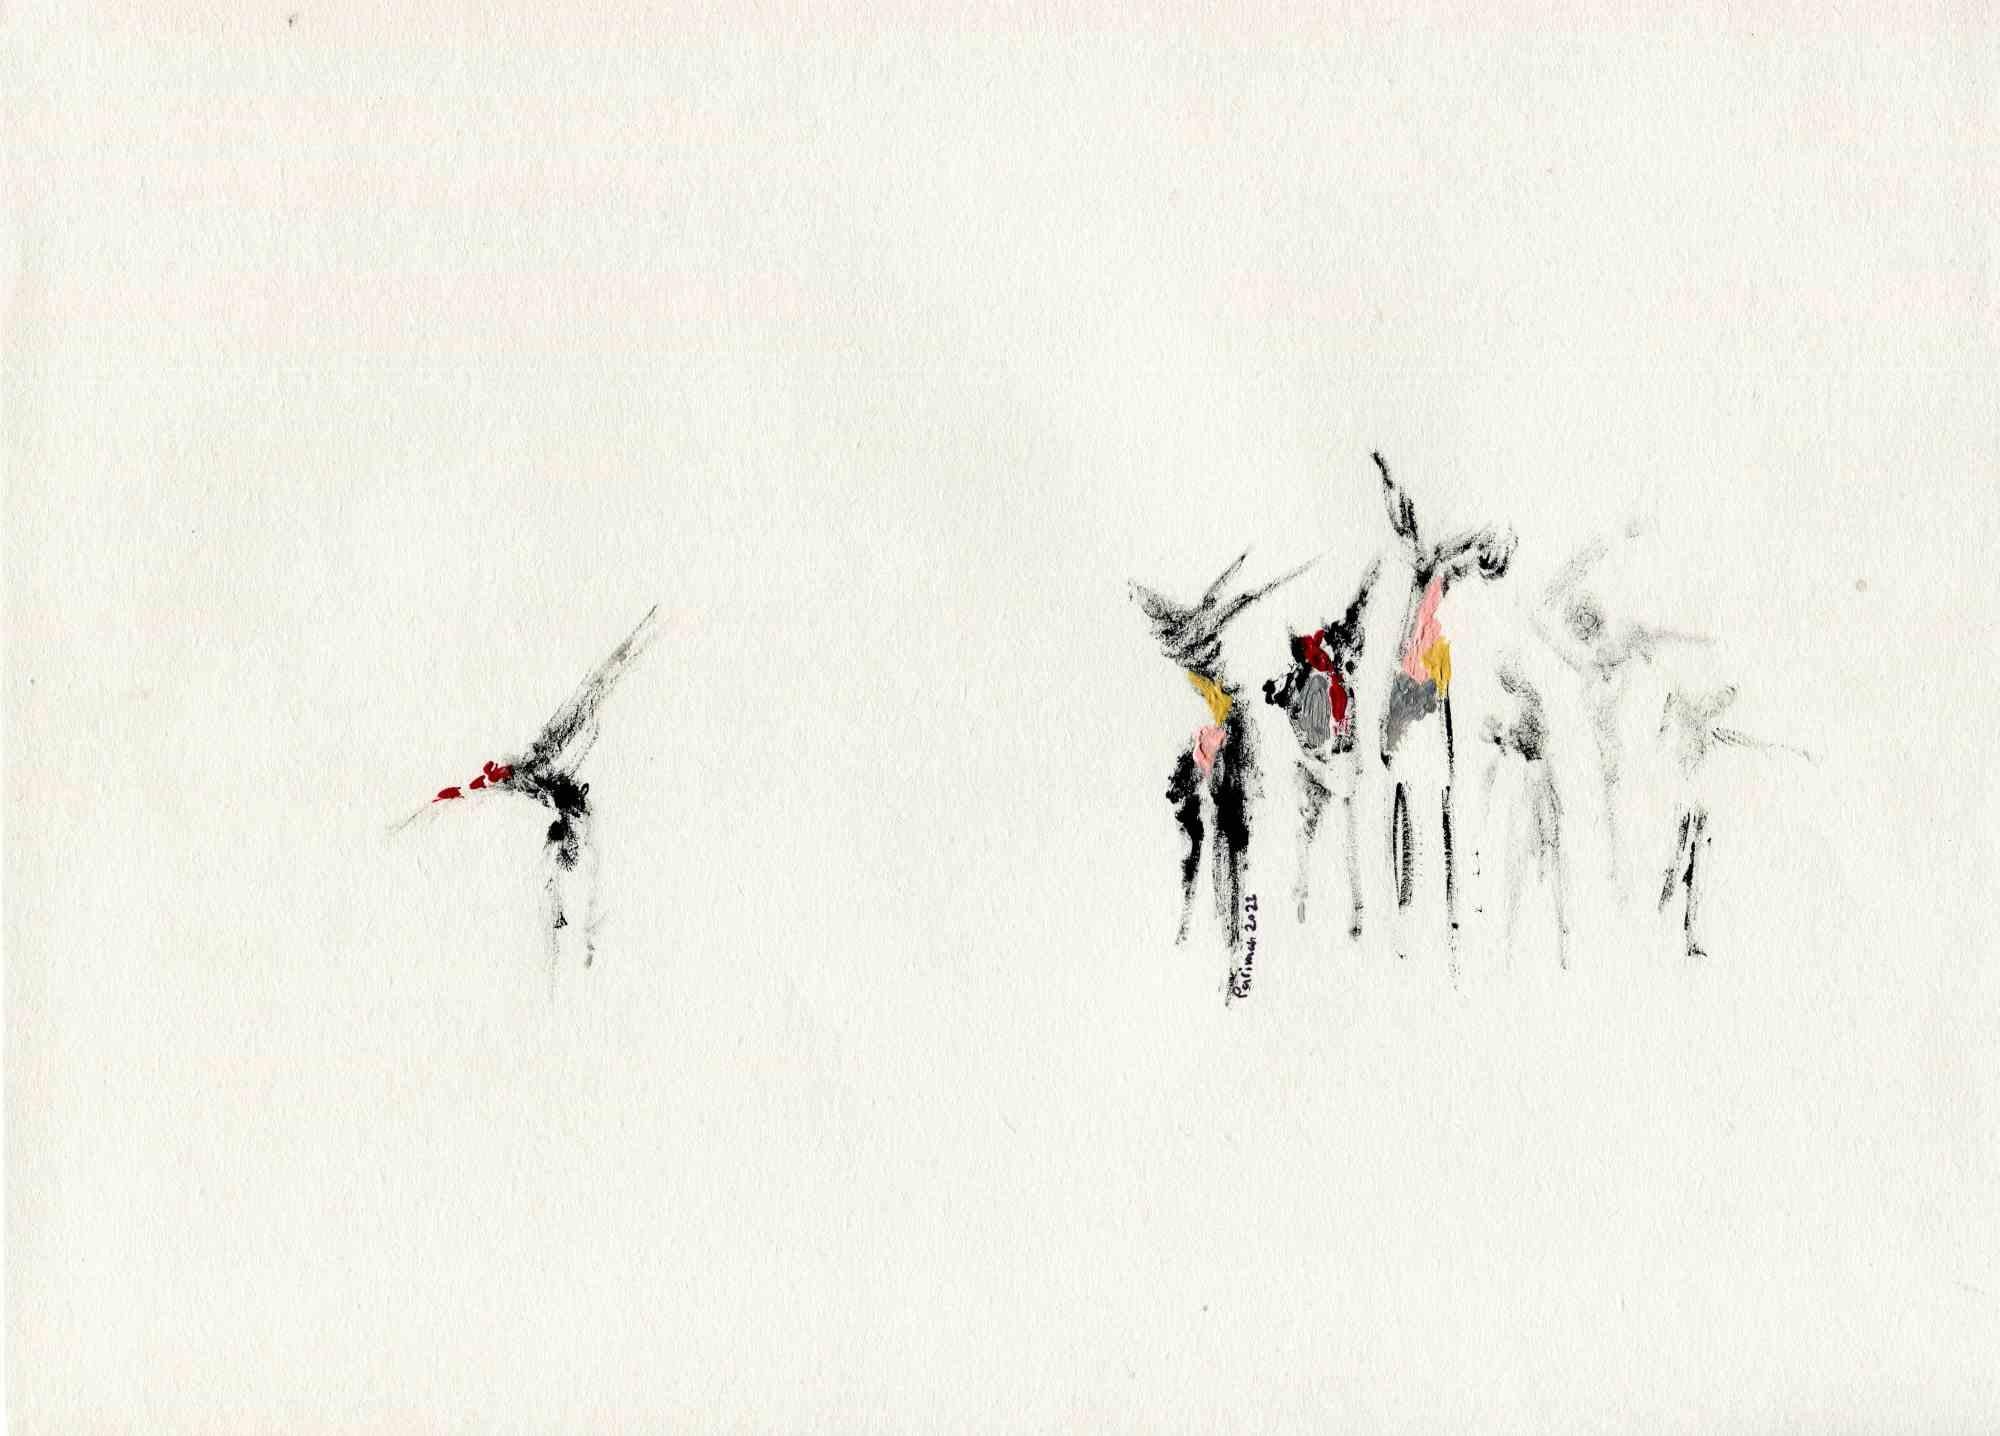 Red Song of Blood ist eine Zeichnung der iranischen Malerin und Dichterin Parimah Avani aus dem Jahr 2022.

China-Tusche und Acryl auf elfenbeinfarbenem Papier.
 
Handsigniert und datiert.
 
Ausgezeichnete Bedingungen.
 
Präsentiert in der von Leda